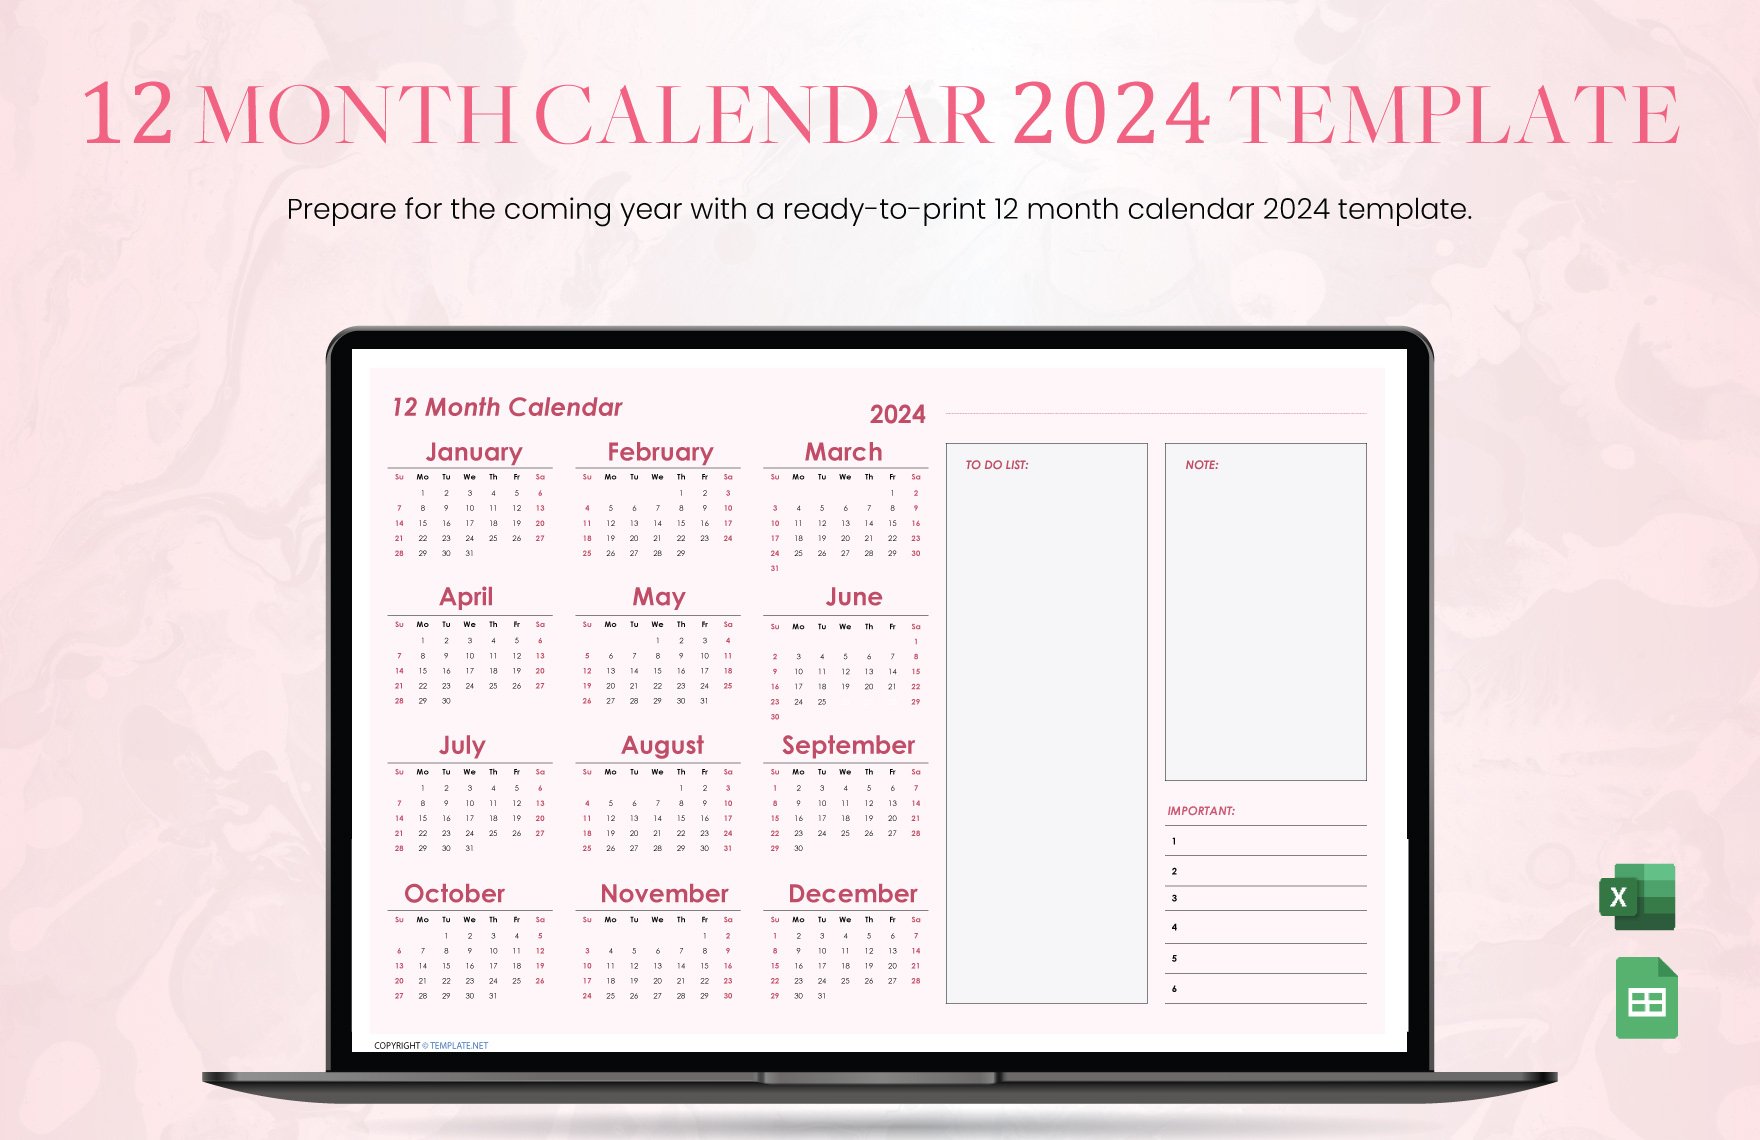 12 month Calendar 2024 Template